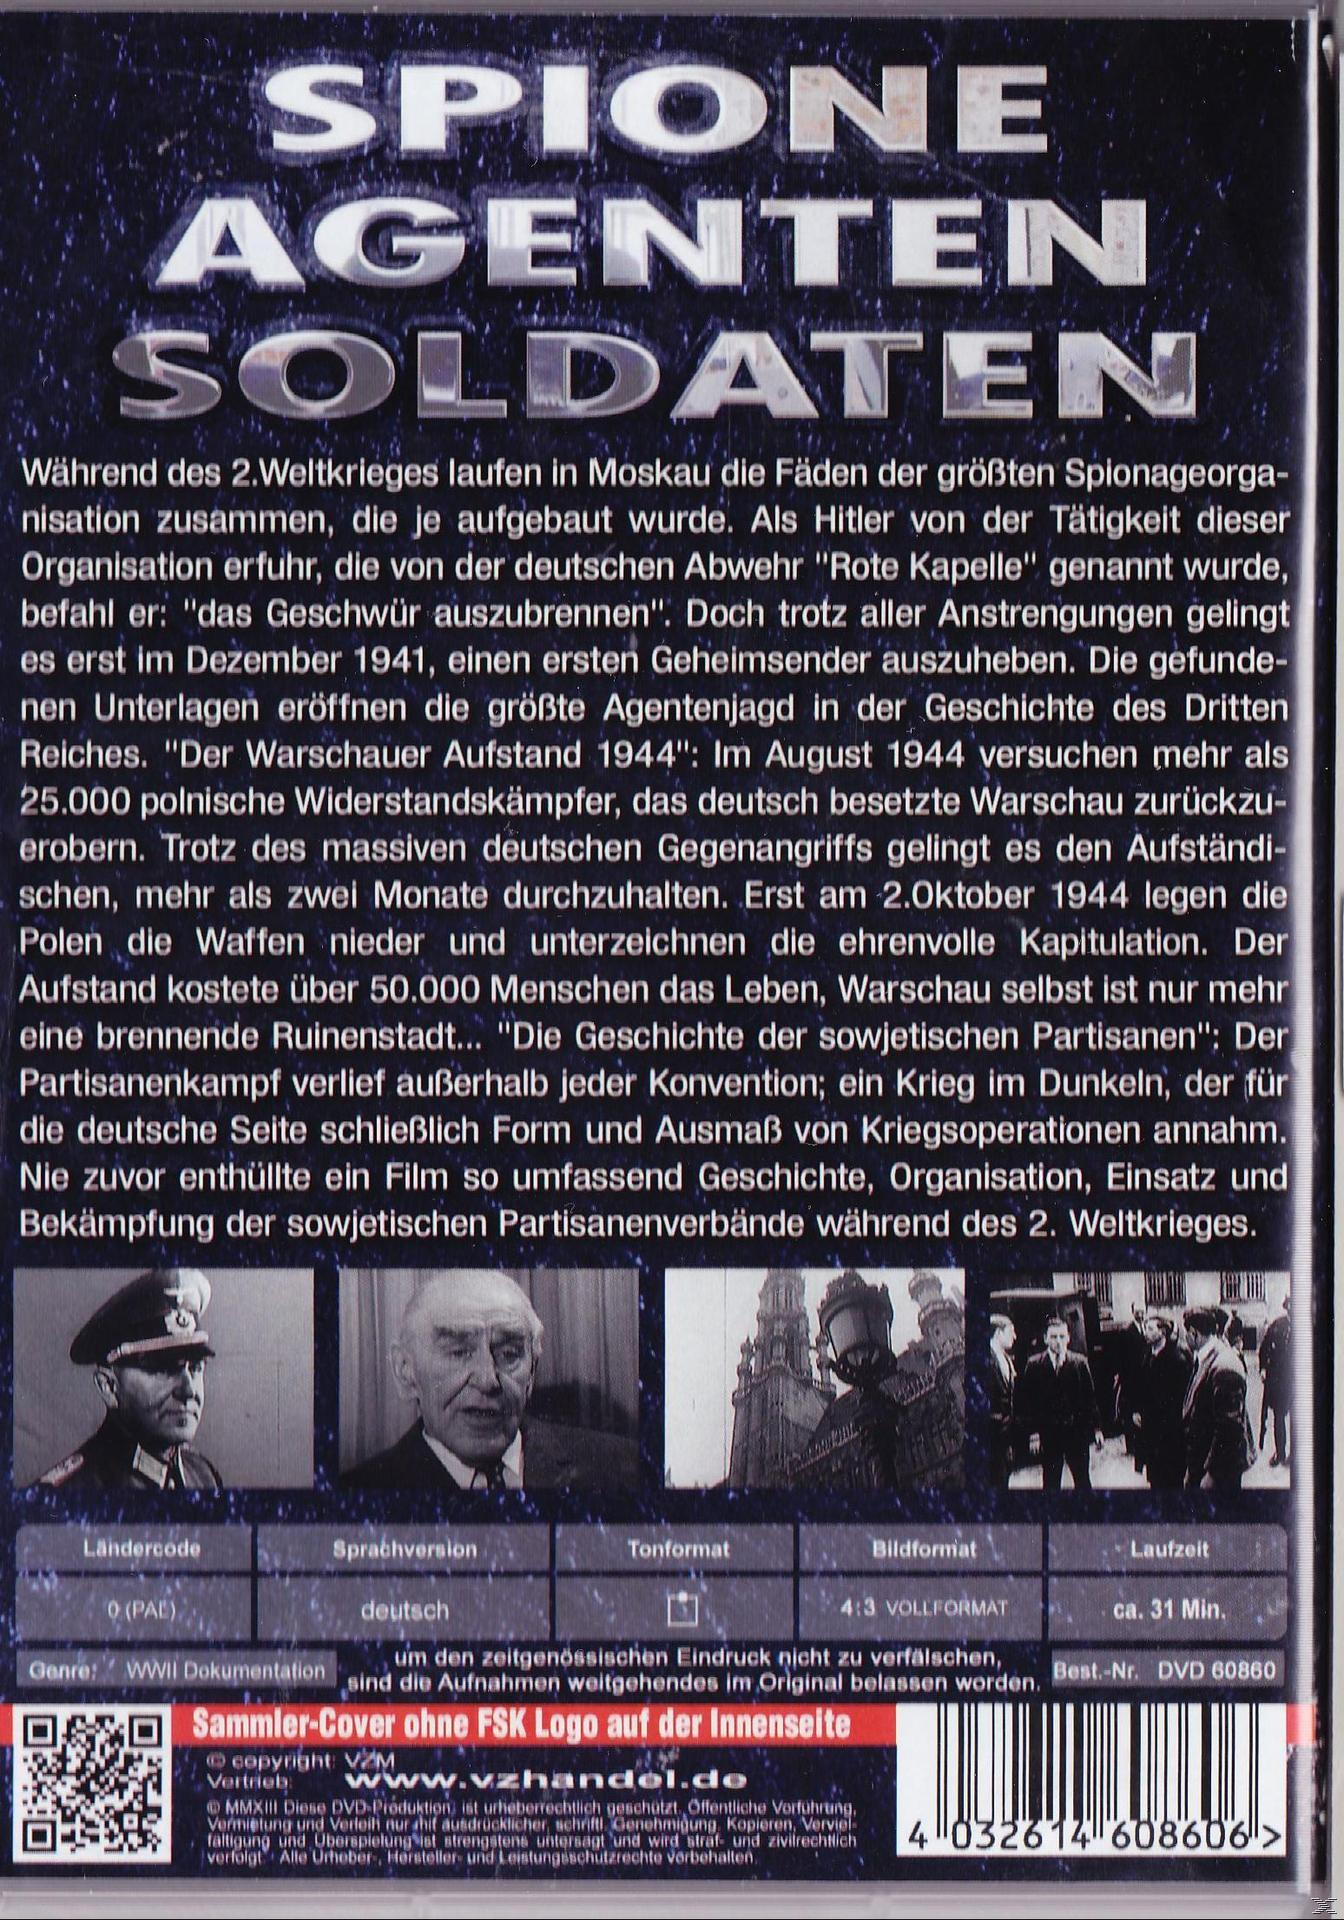 11-SPIONAGERING AGENTEN ROTE SOLDATEN DVD SPIONE KAPE